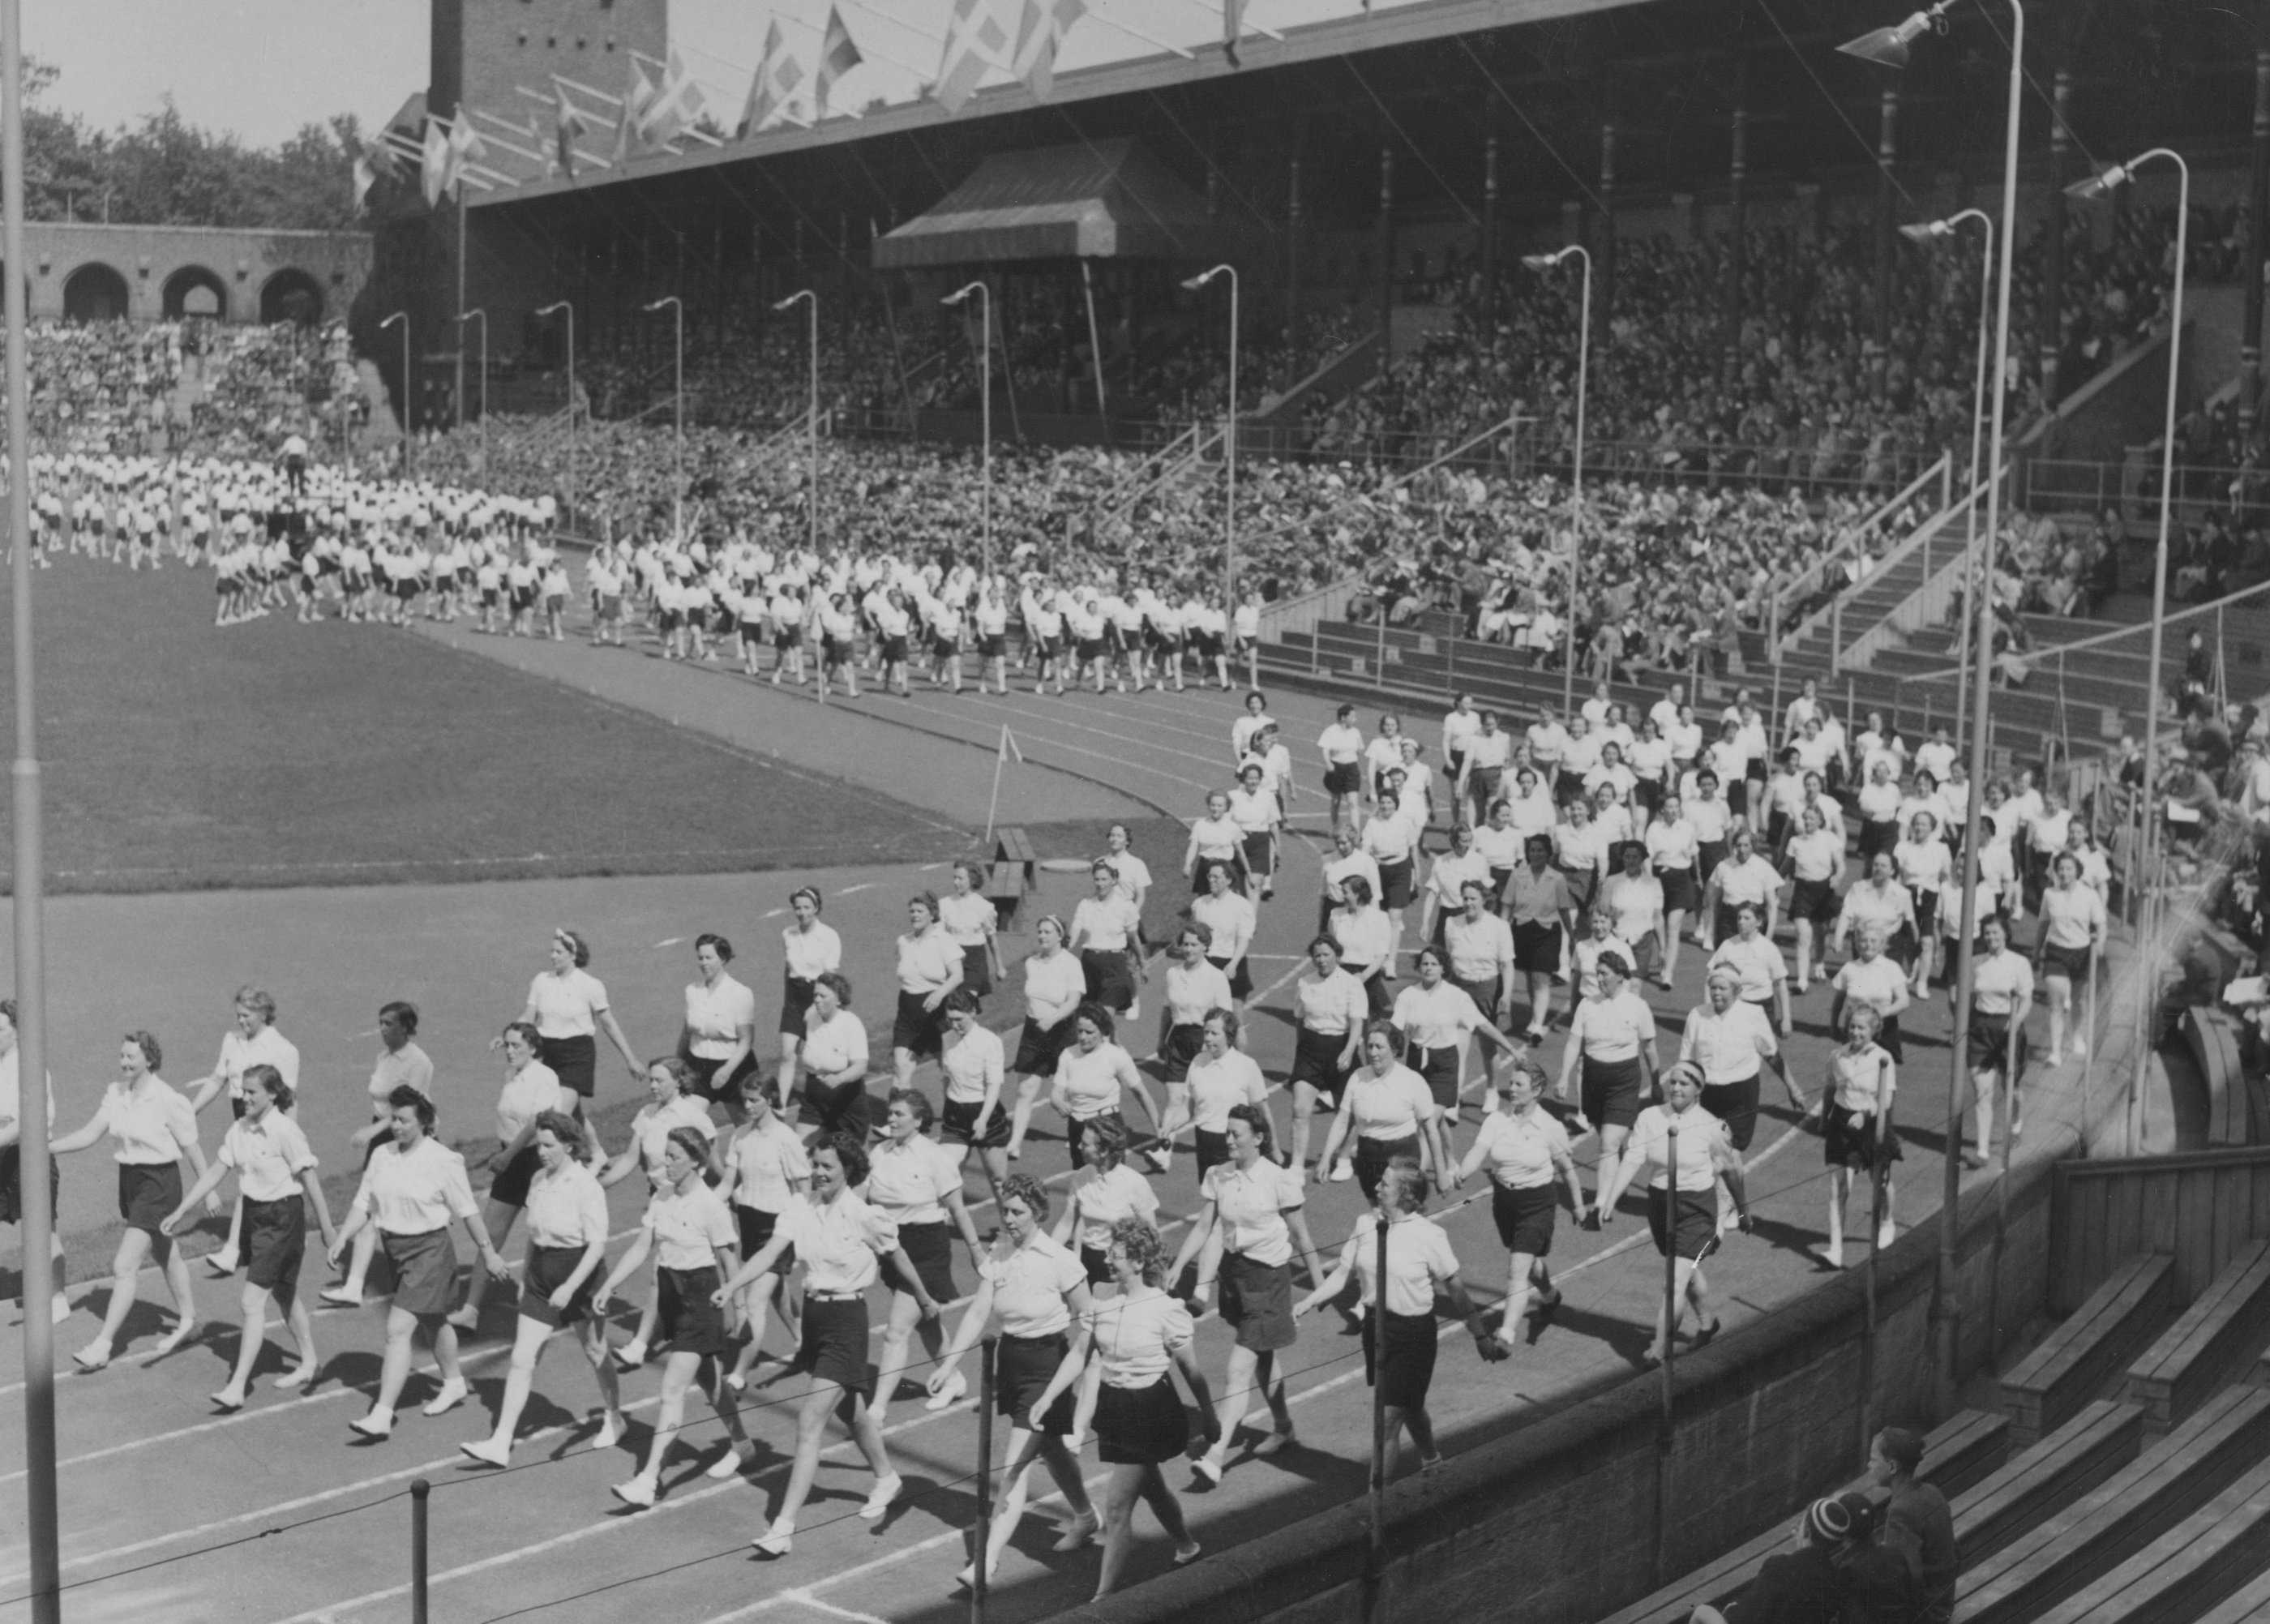 En bild och bildtext från det episka bildarkivet; "Husmorsgymnastiken på frammarsch.
Husmödrarna marscherar ut ur Stockholm Stadion efter en bejublad uppvisning. Parad."